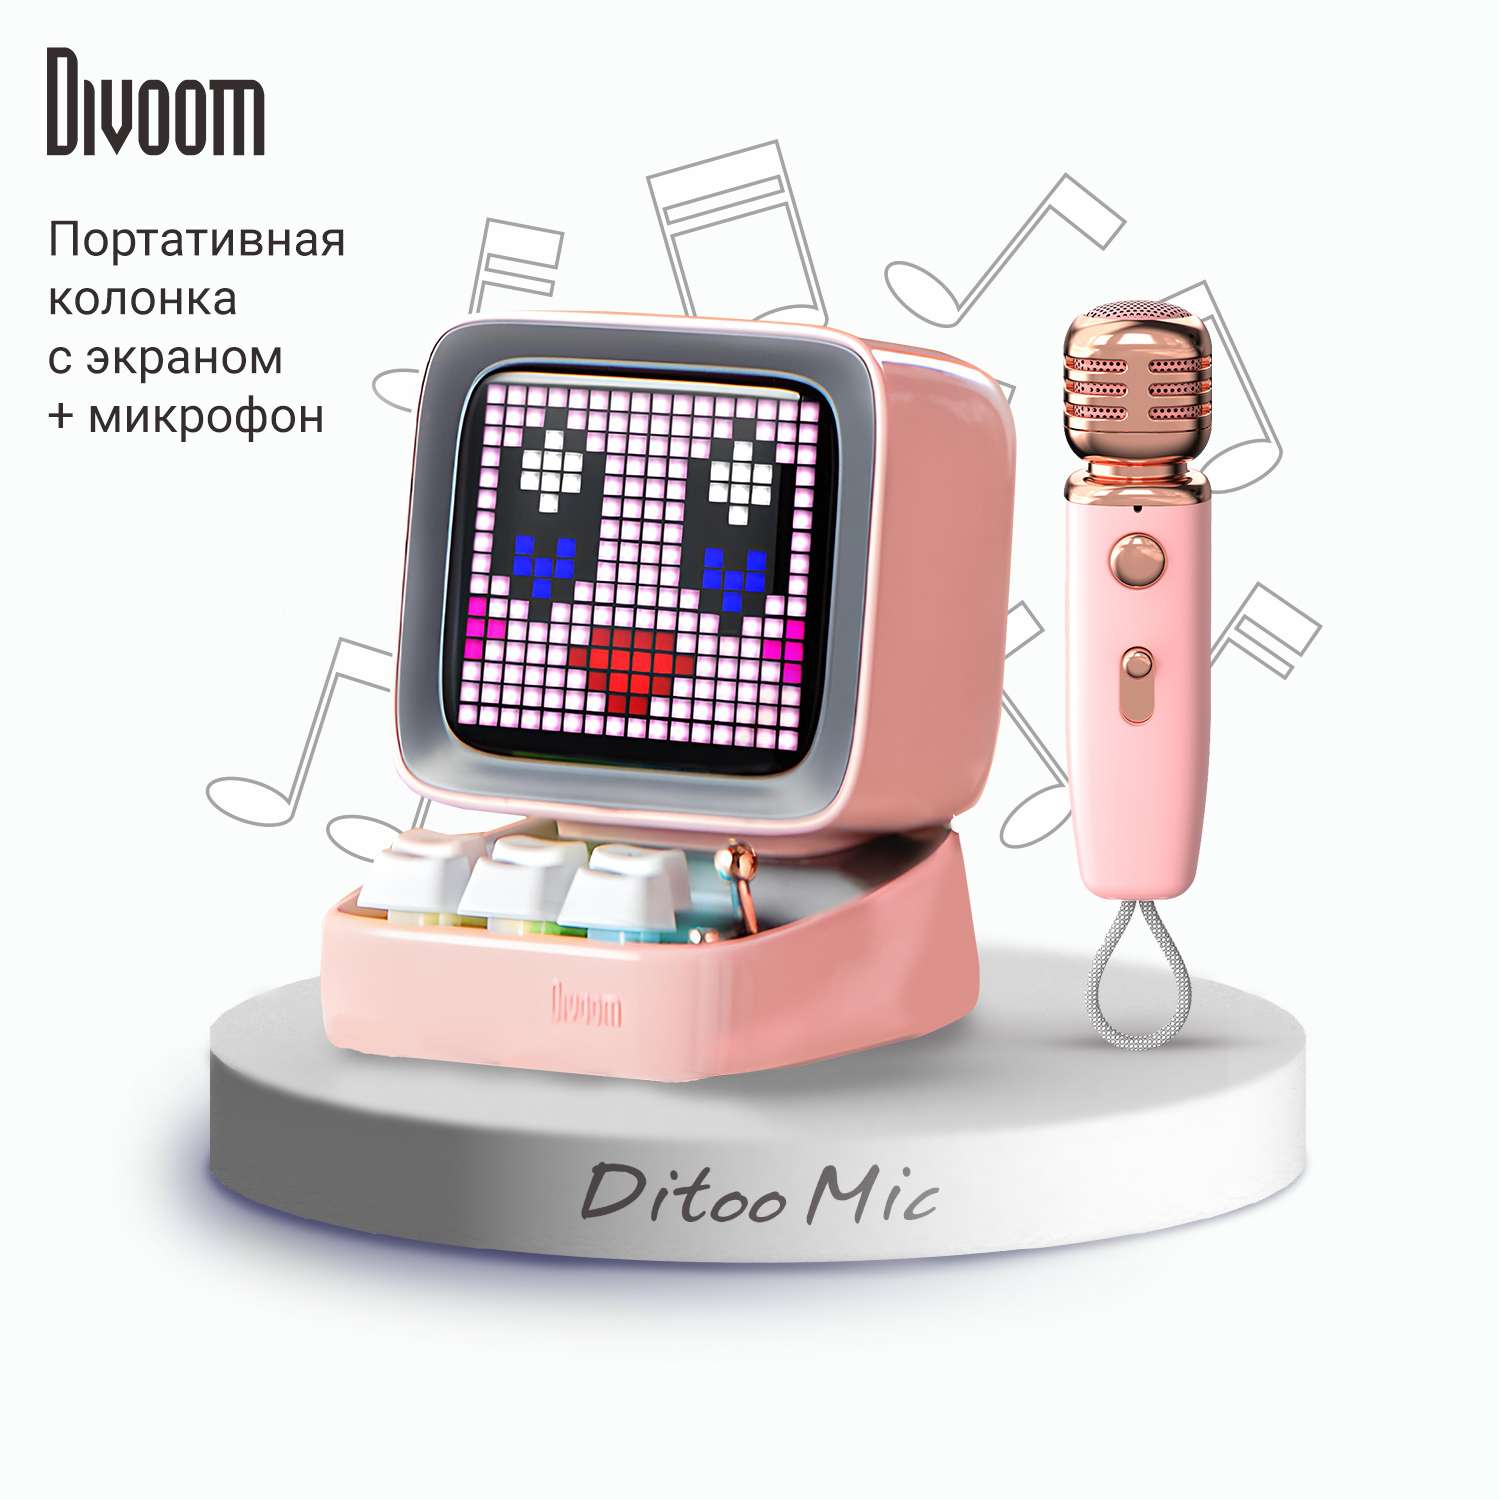 Беспроводная колонка DIVOOM портативная Ditoo Mic розовая с микрофоном и пиксельным LED-дисплеем - фото 1